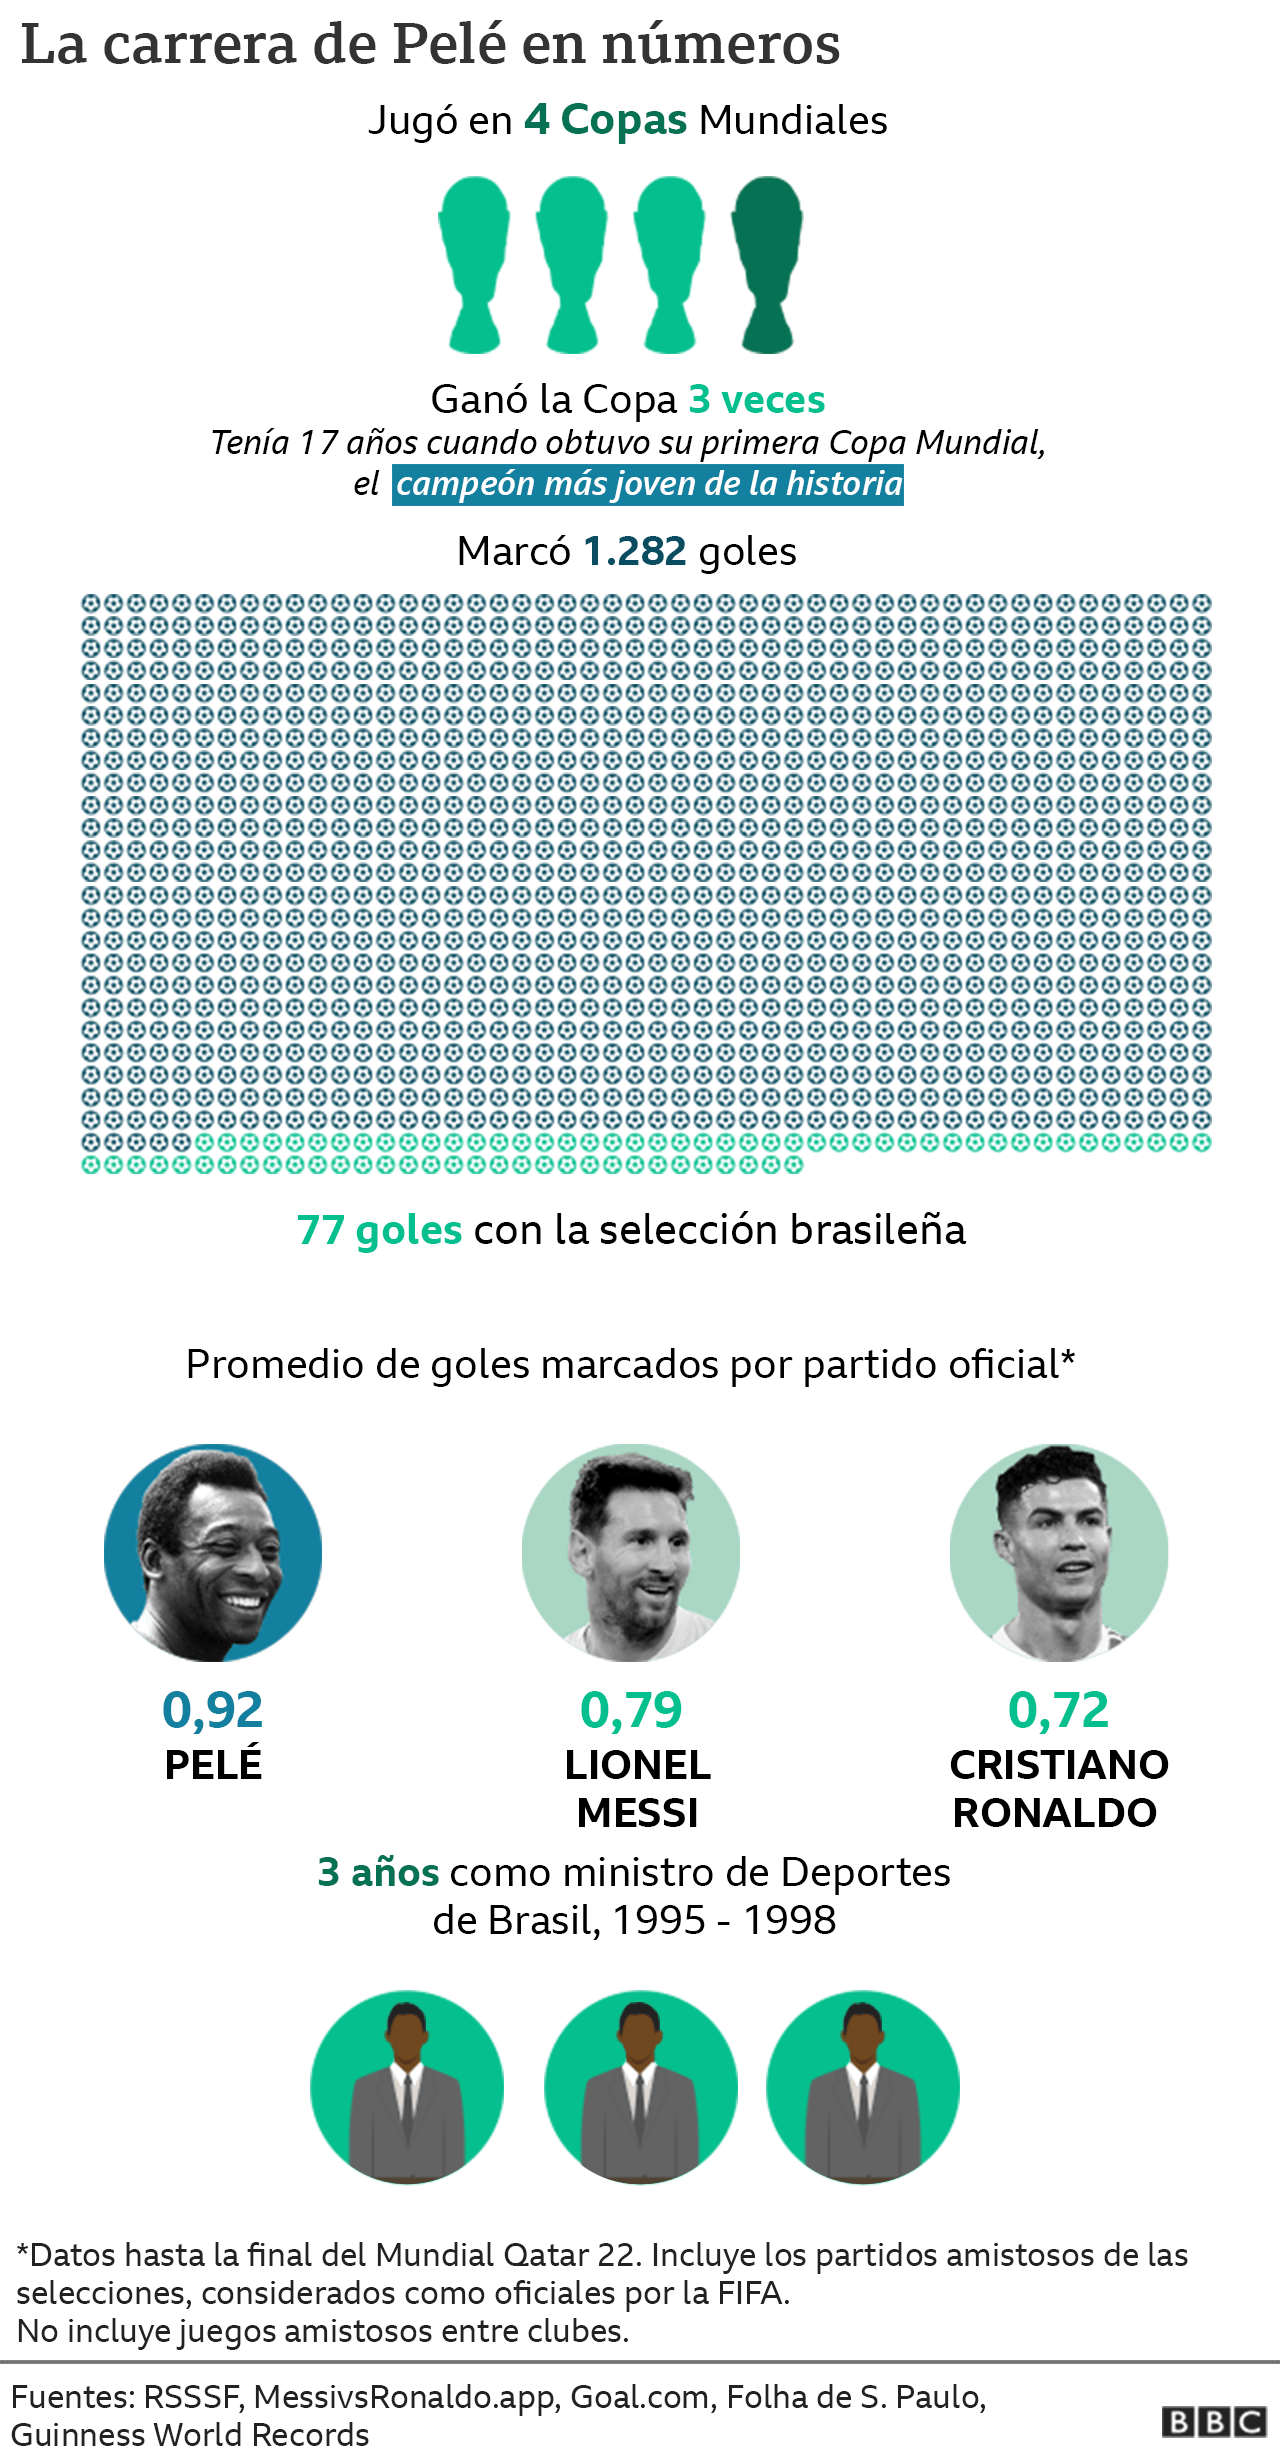 Gráfico con cifras que marcaron la carrera de Pelé